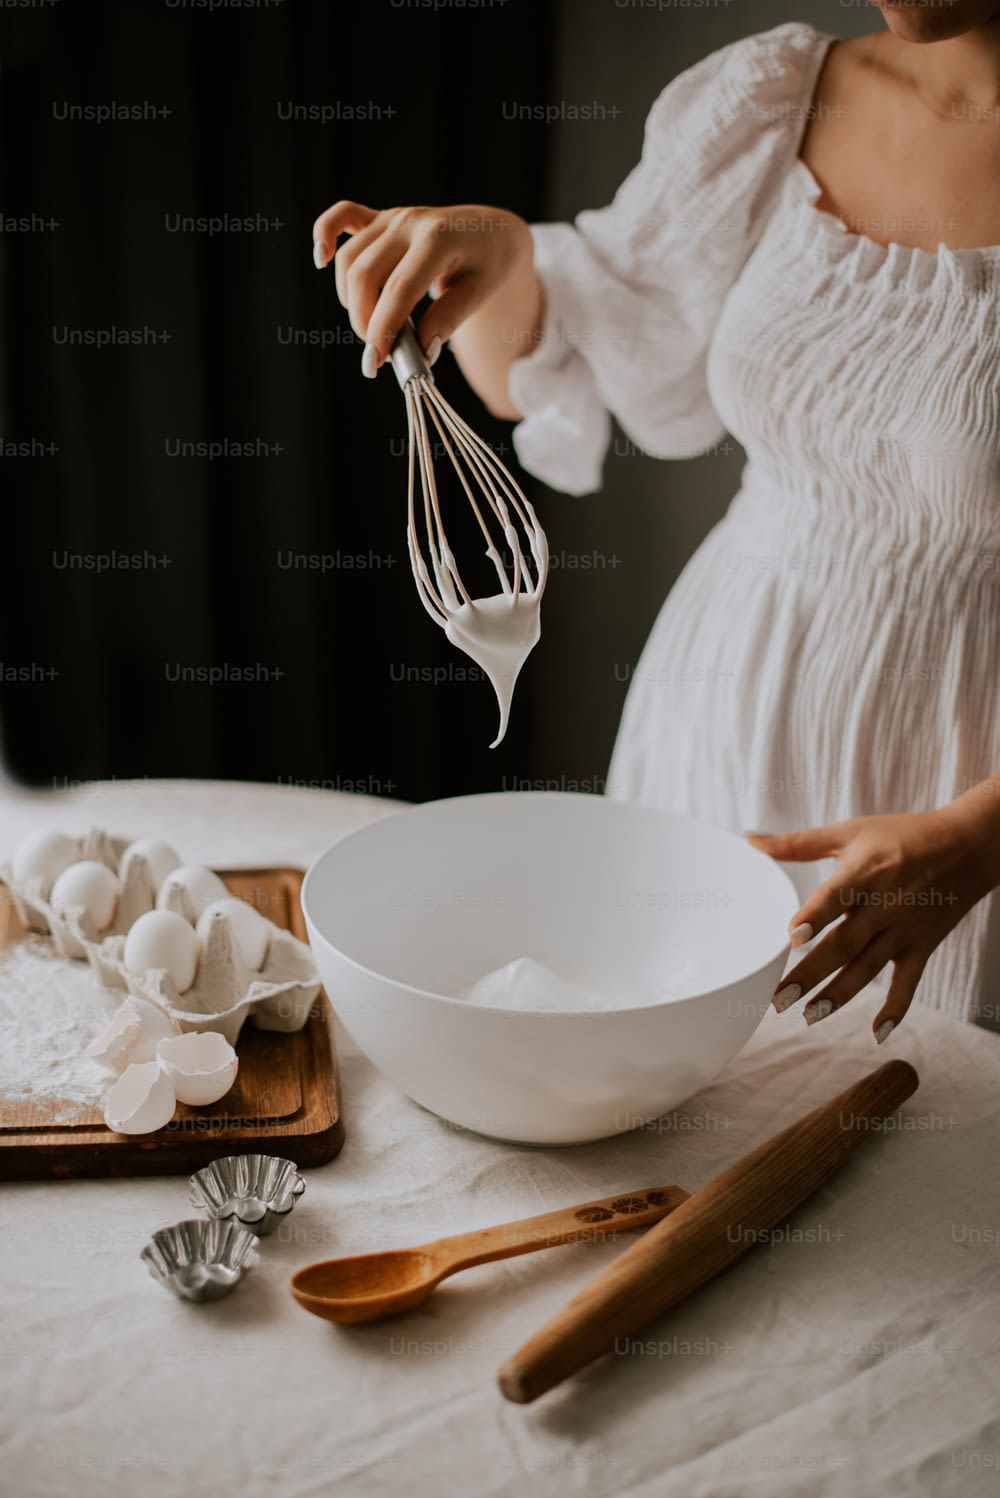 Eine Frau in einem weißen Kleid verquirlt Eier in eine Schüssel